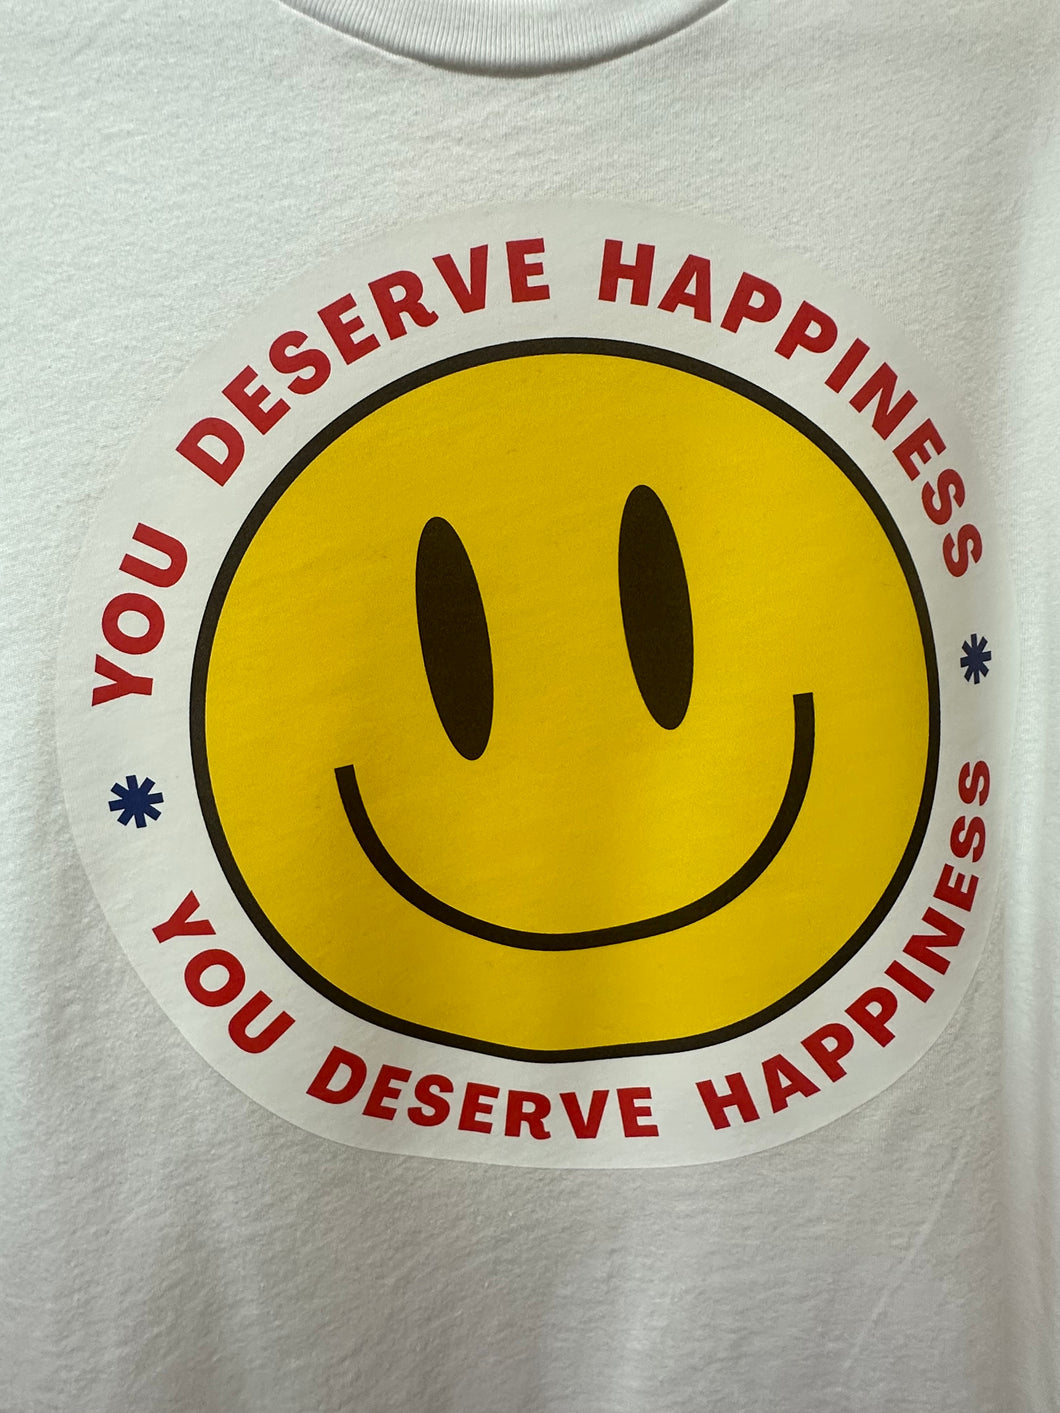 You Deserve Better T-shirt